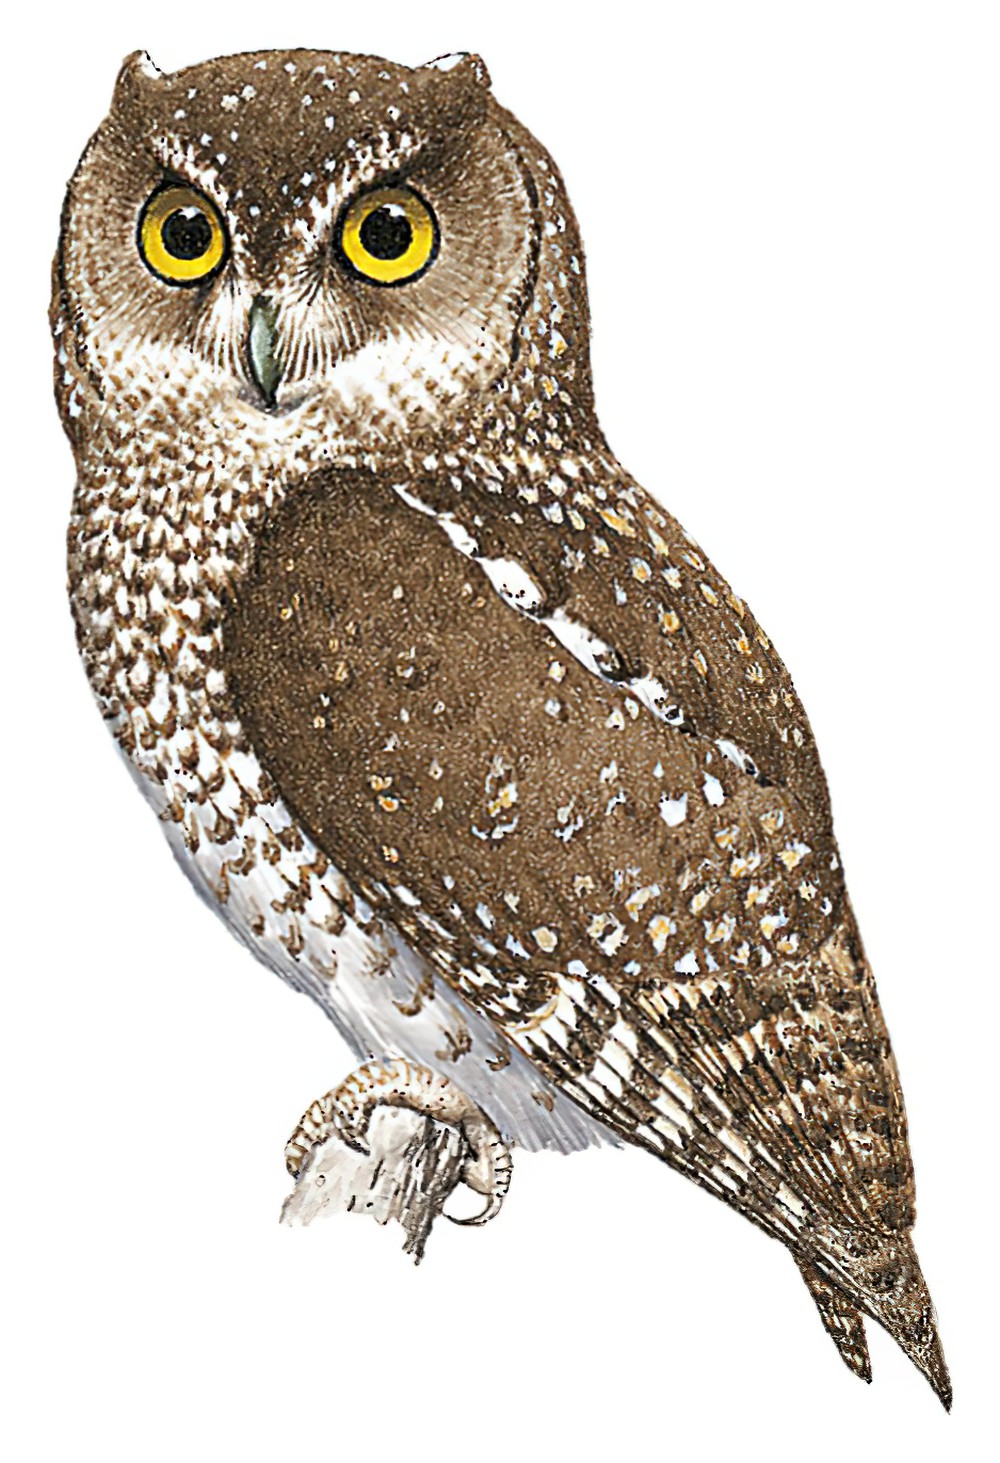 Bearded Screech-Owl / Megascops barbarus